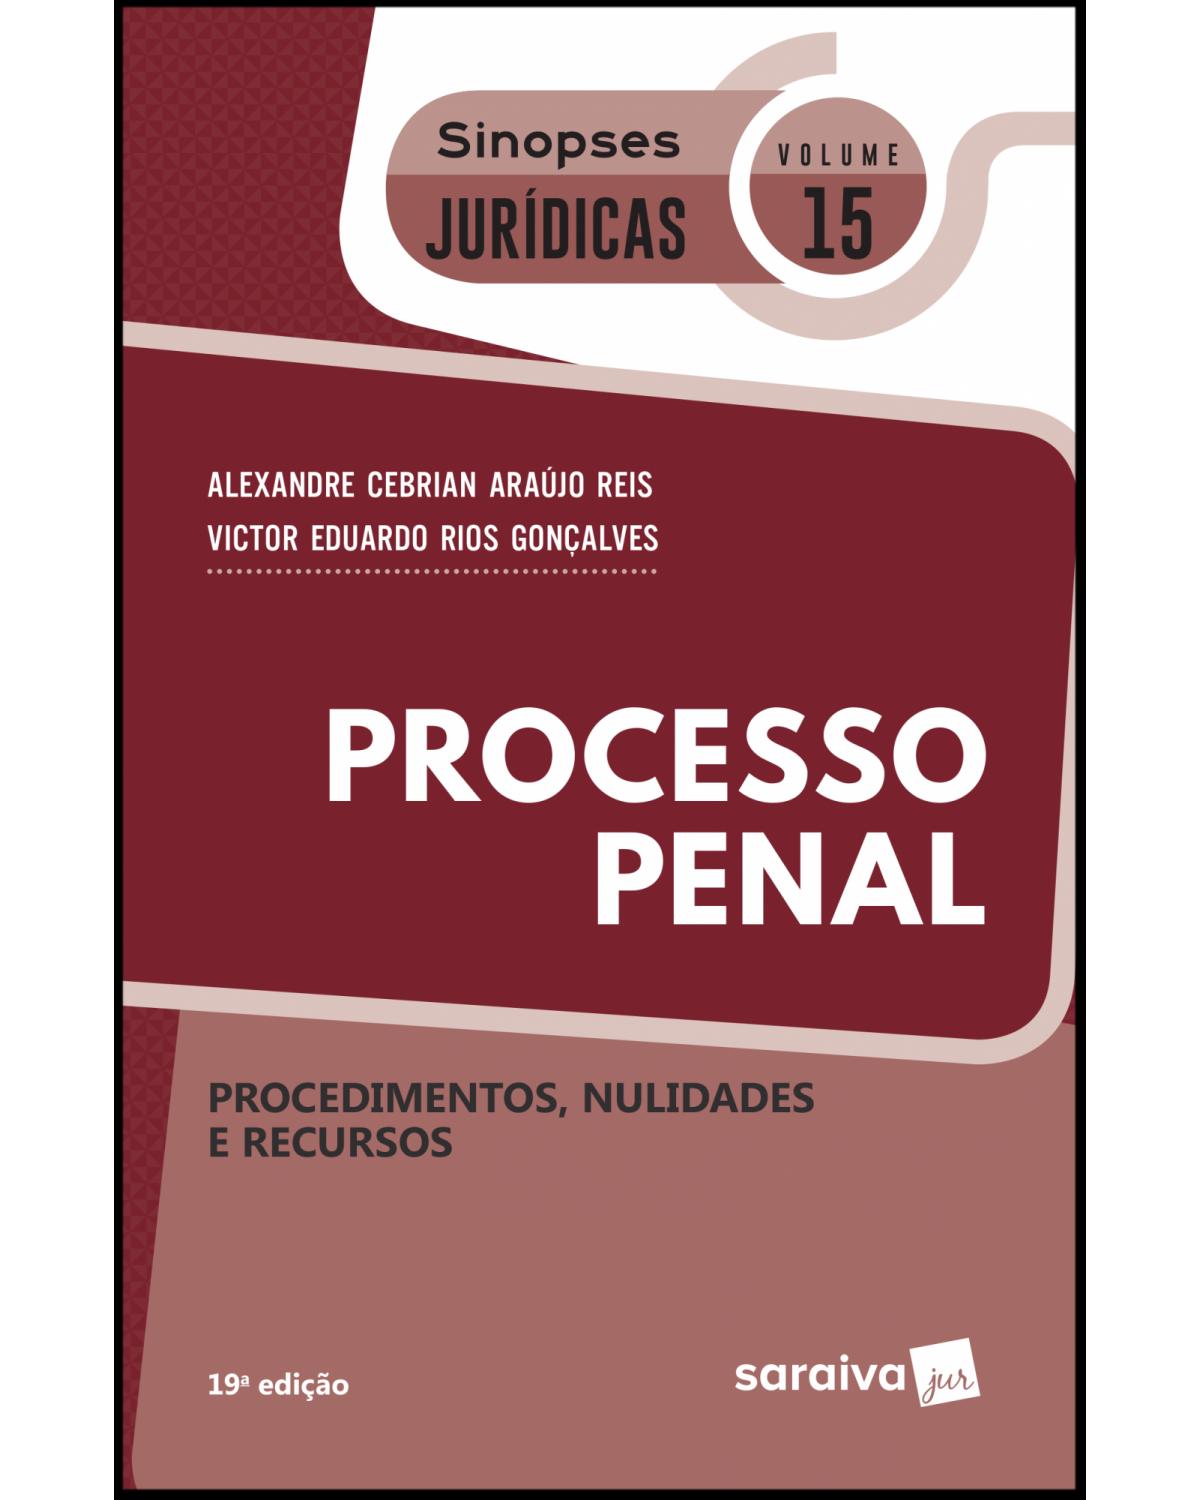 Processo penal - procedimentos, nulidades e recursos - 19ª Edição | 2019